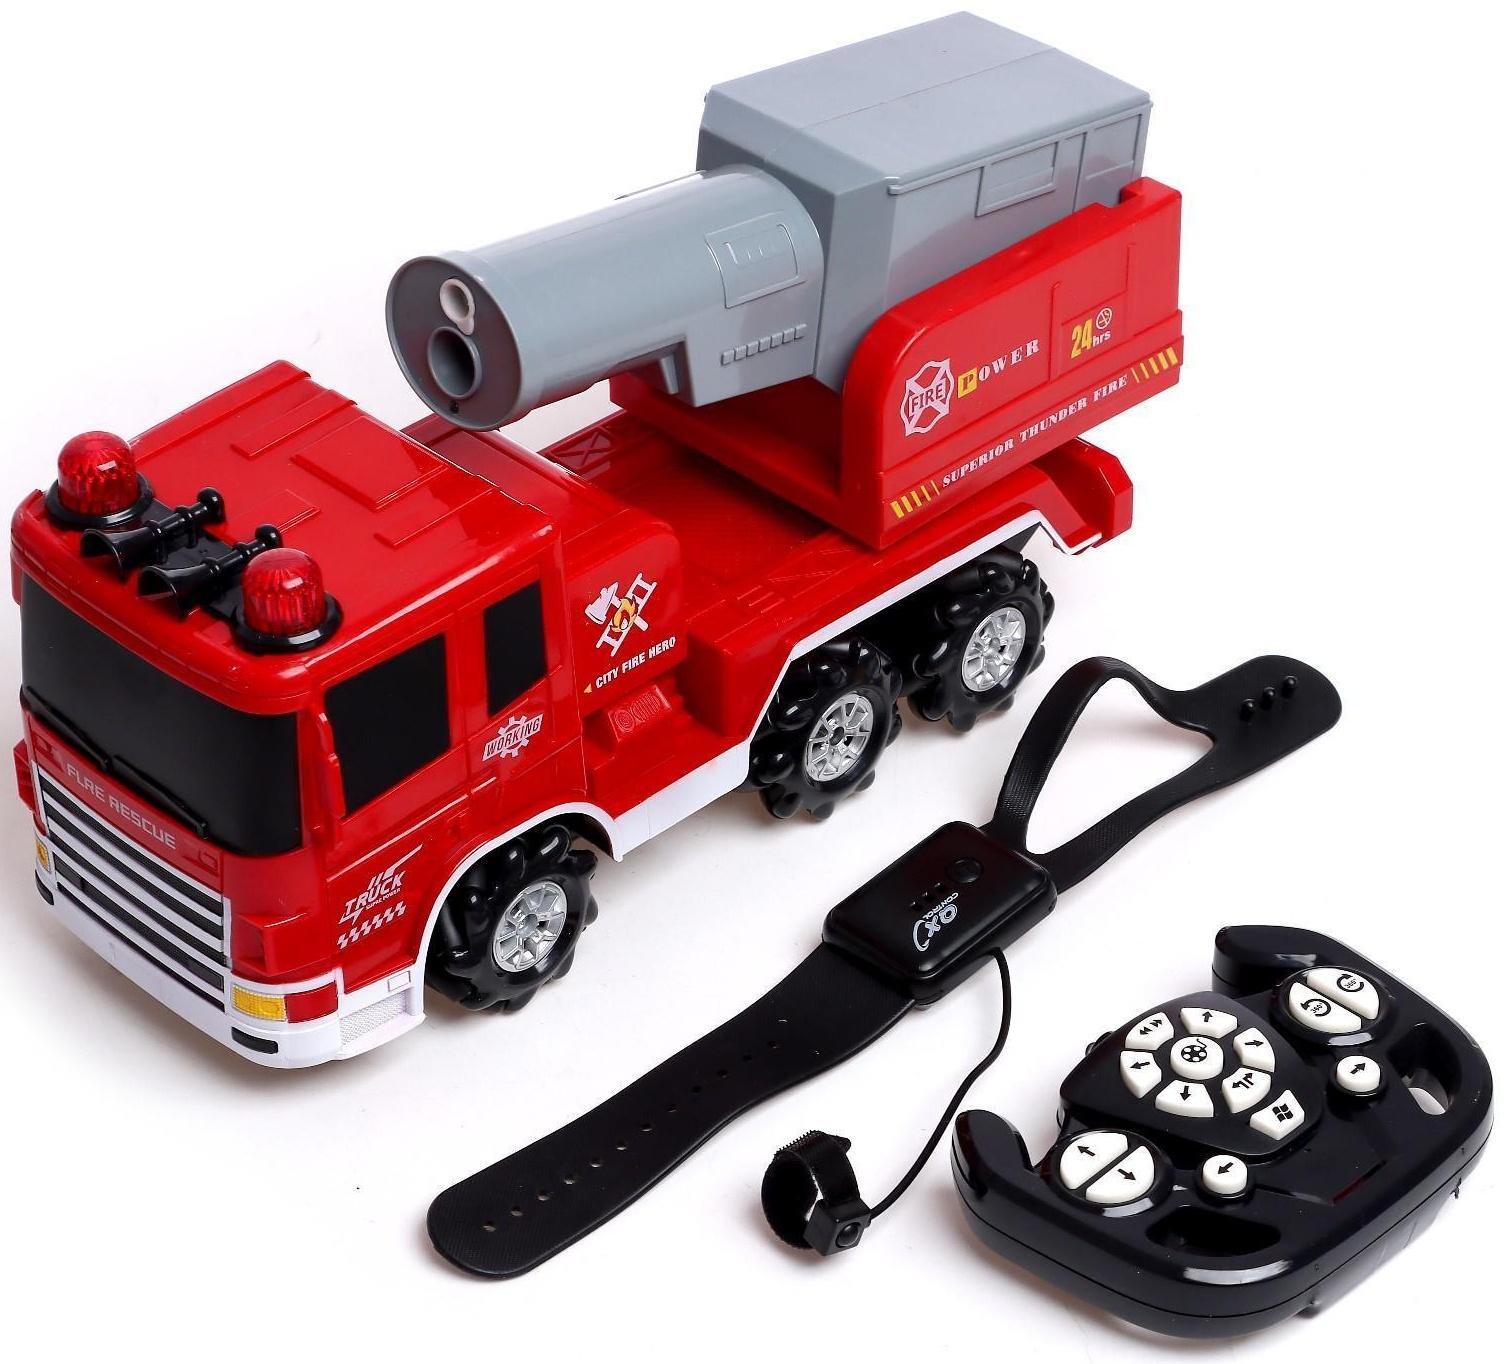 Машина радиоуправляемая «Пожарная служба», масштаб 1:14, 4WD, управление жестами, дымовая пушка